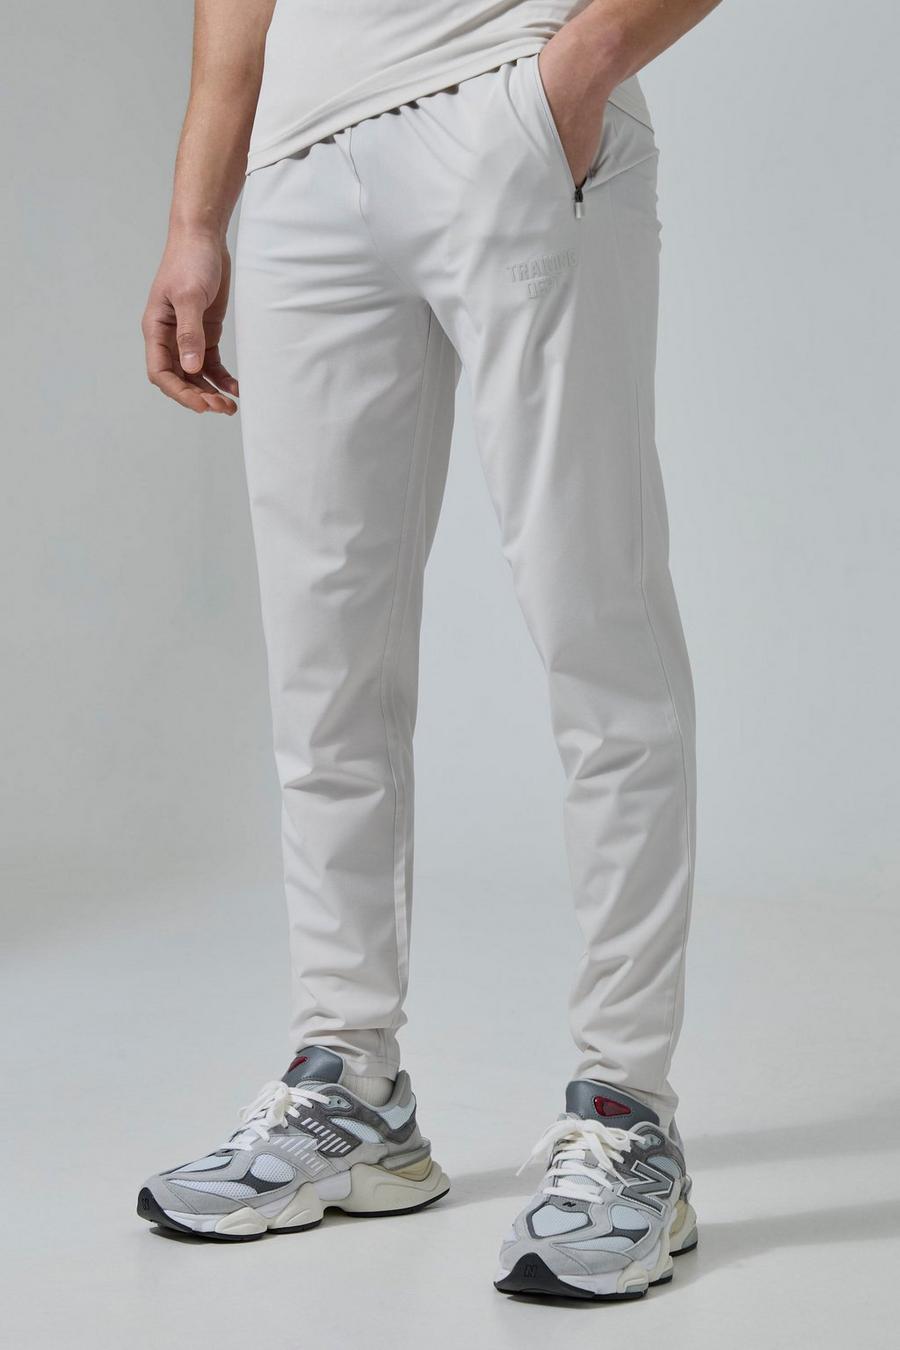 Pantalón deportivo Active de tela elástica, Light grey